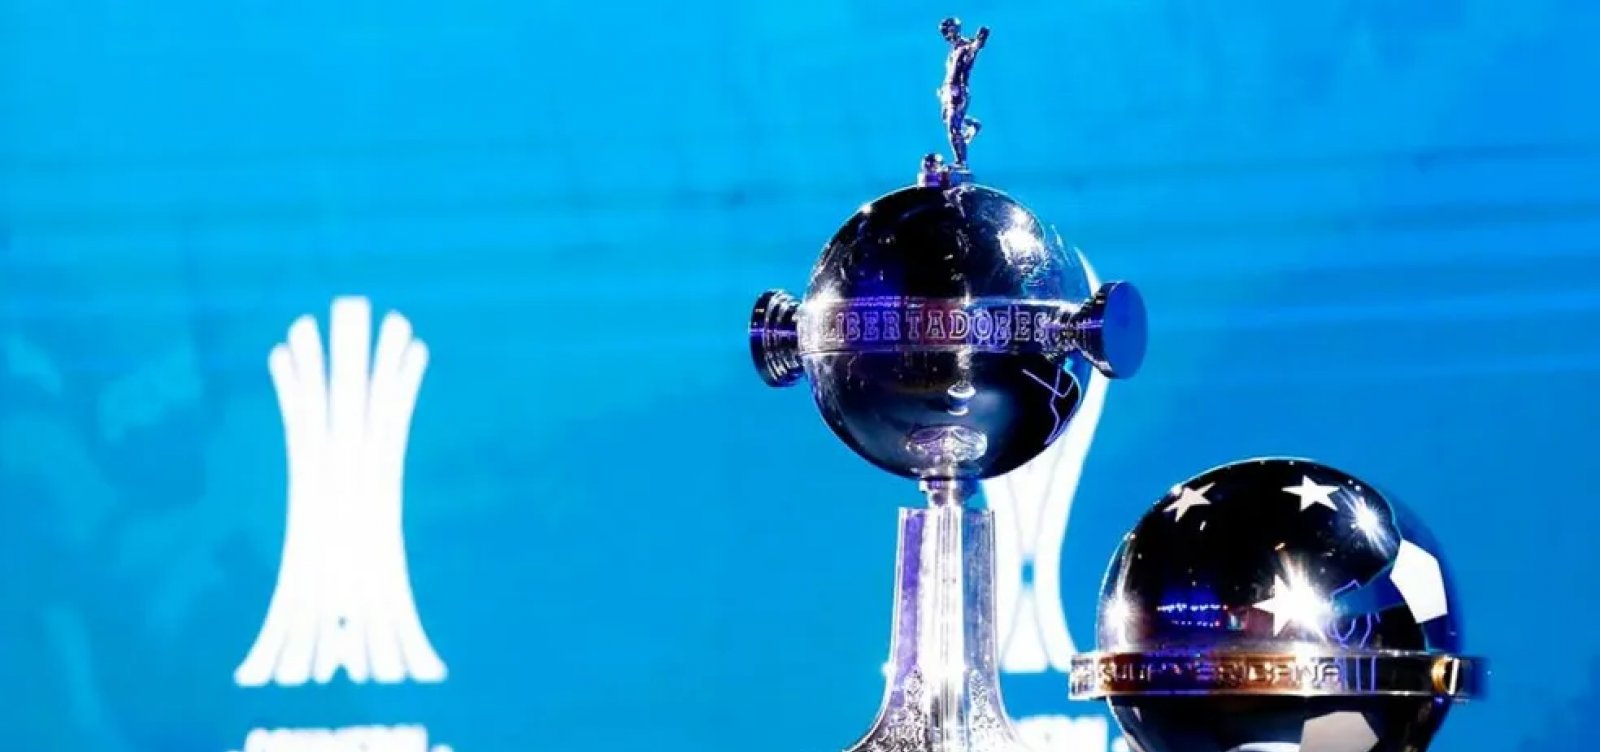 Conmebol sorteia grupos da edição 2023 da Copa Libertadores